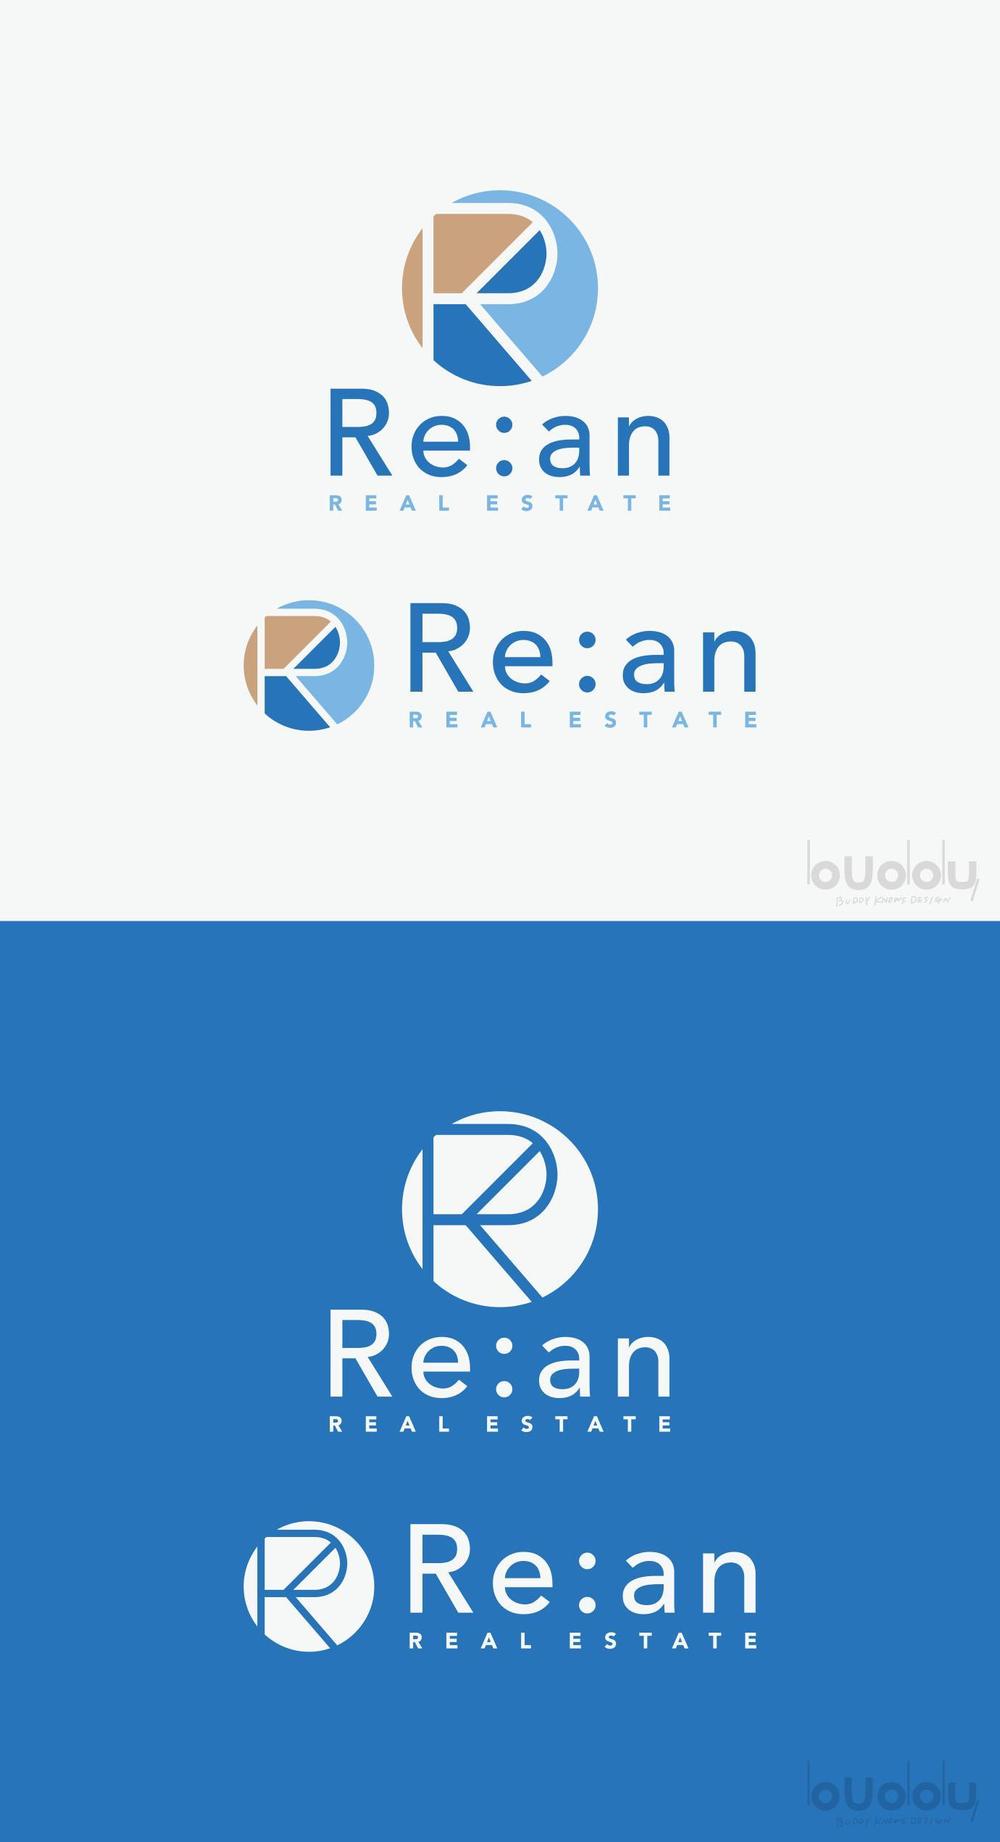 Re-an_logobase.jpg